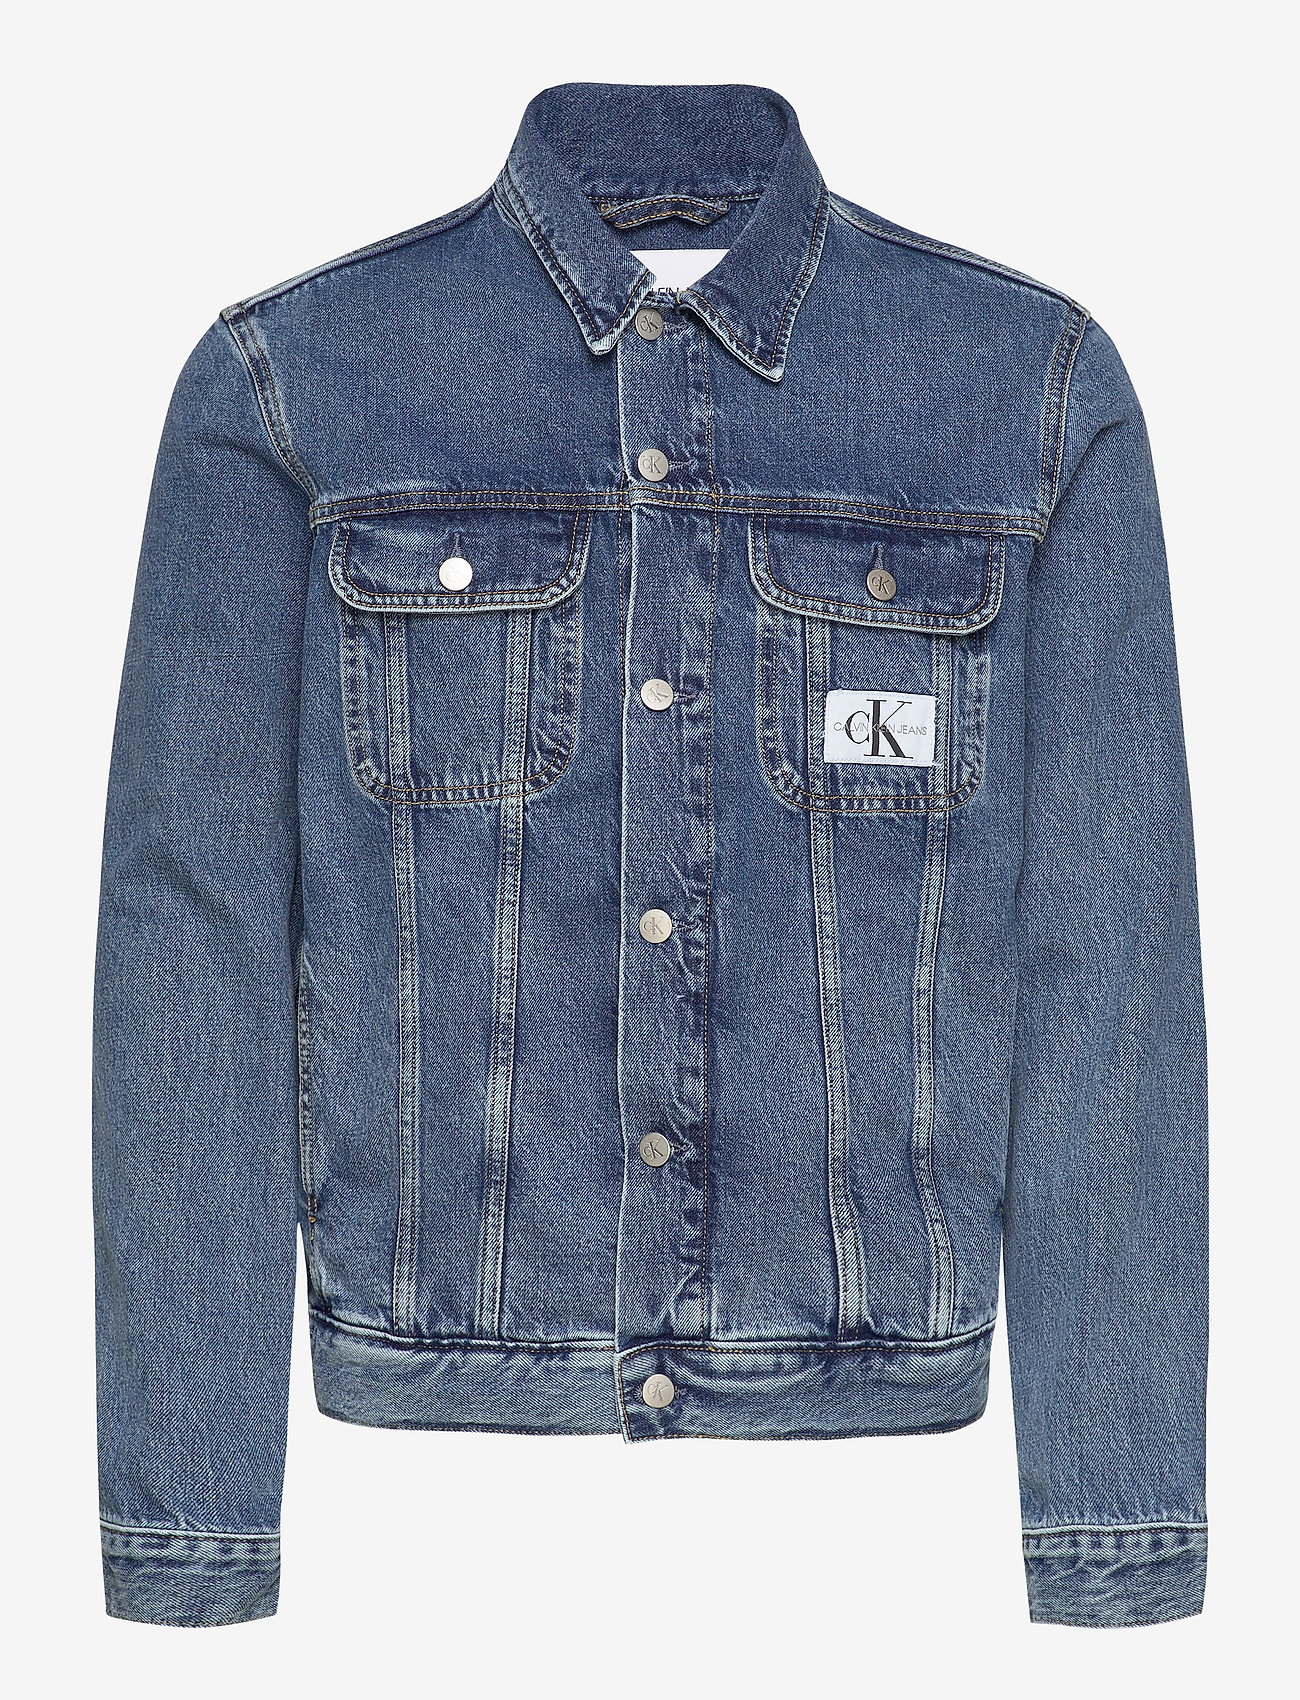 90s Denim Jacket (Ab076 Icn Mid Blue) (97.43 €) - Calvin Klein Jeans ...